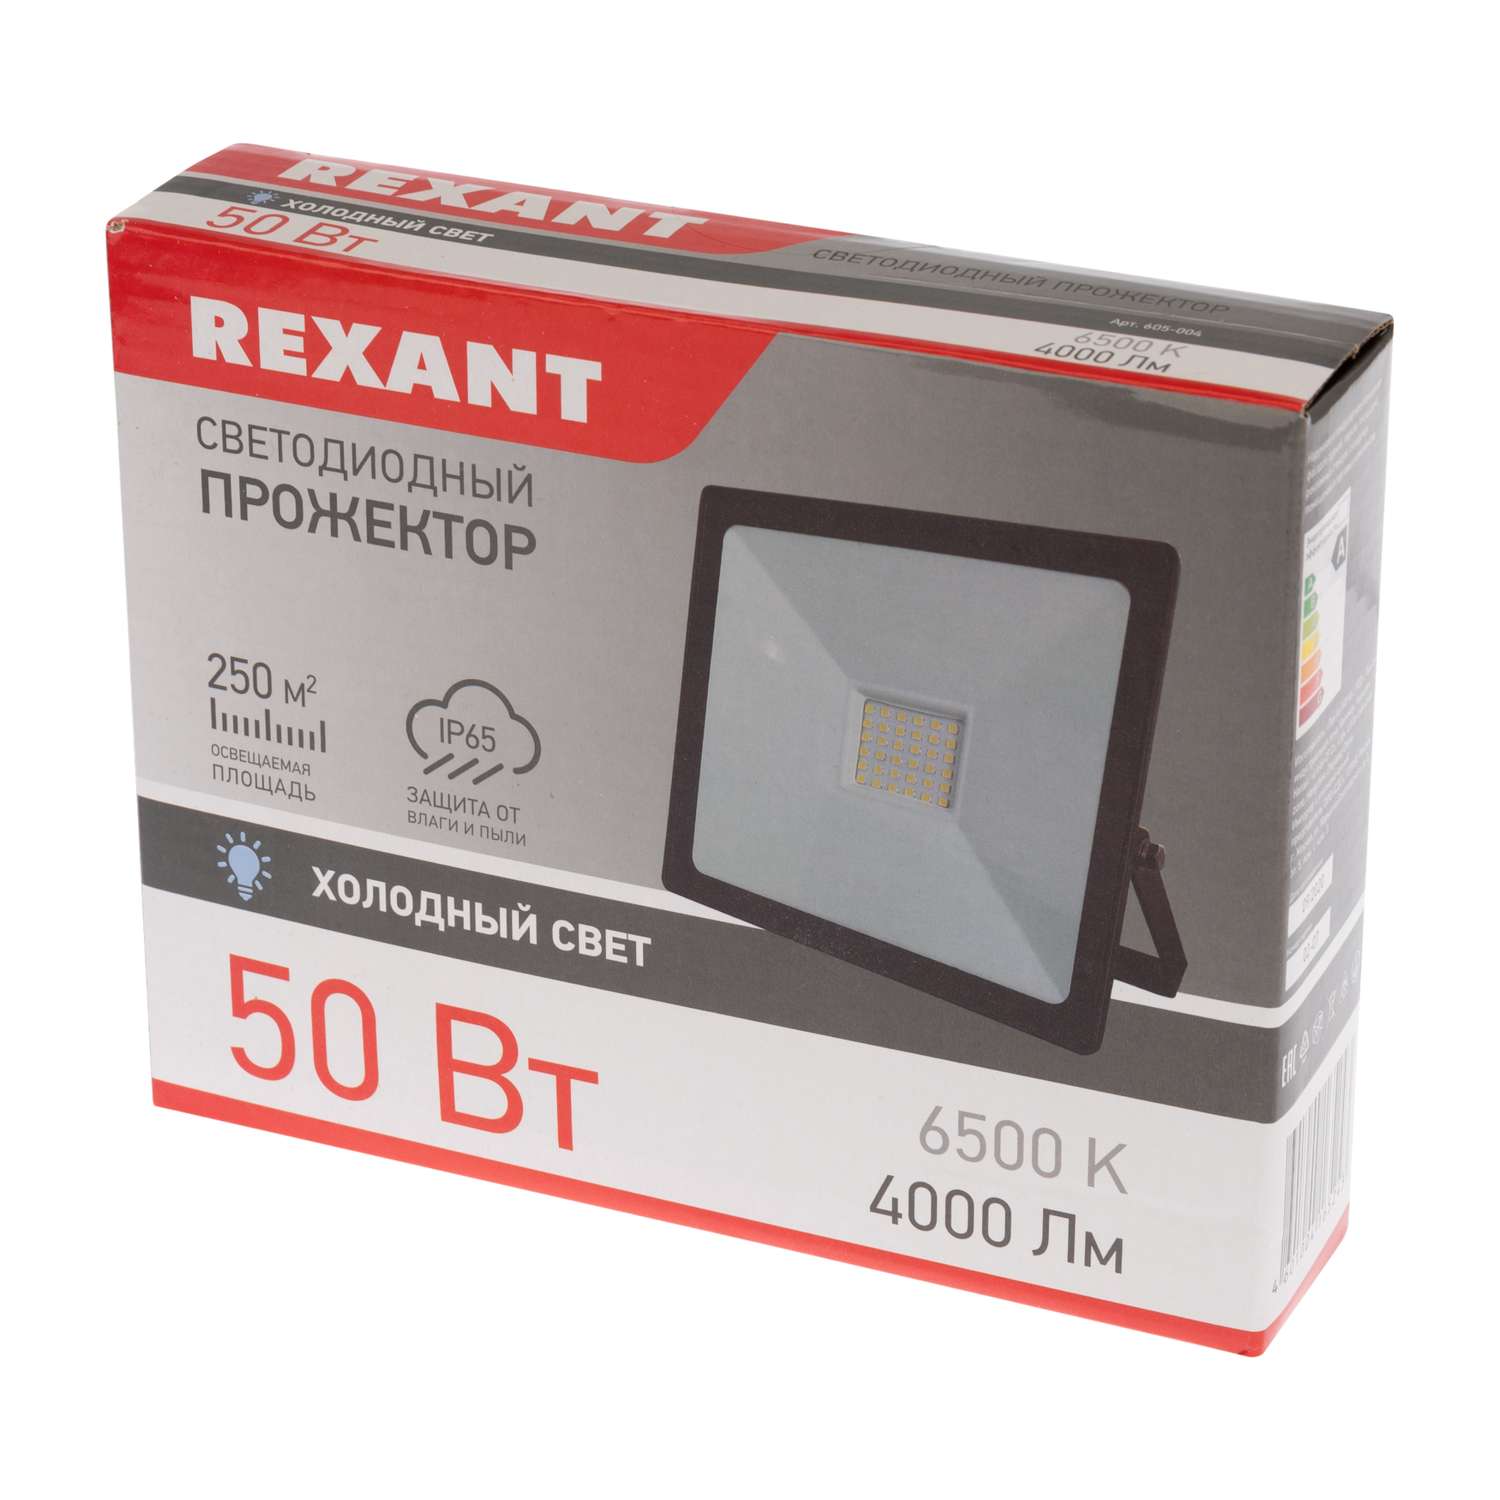 Прожектор REXANT 50 Вт светодиодный 4000Лм 6500К холодный свет черный корпус - фото 4